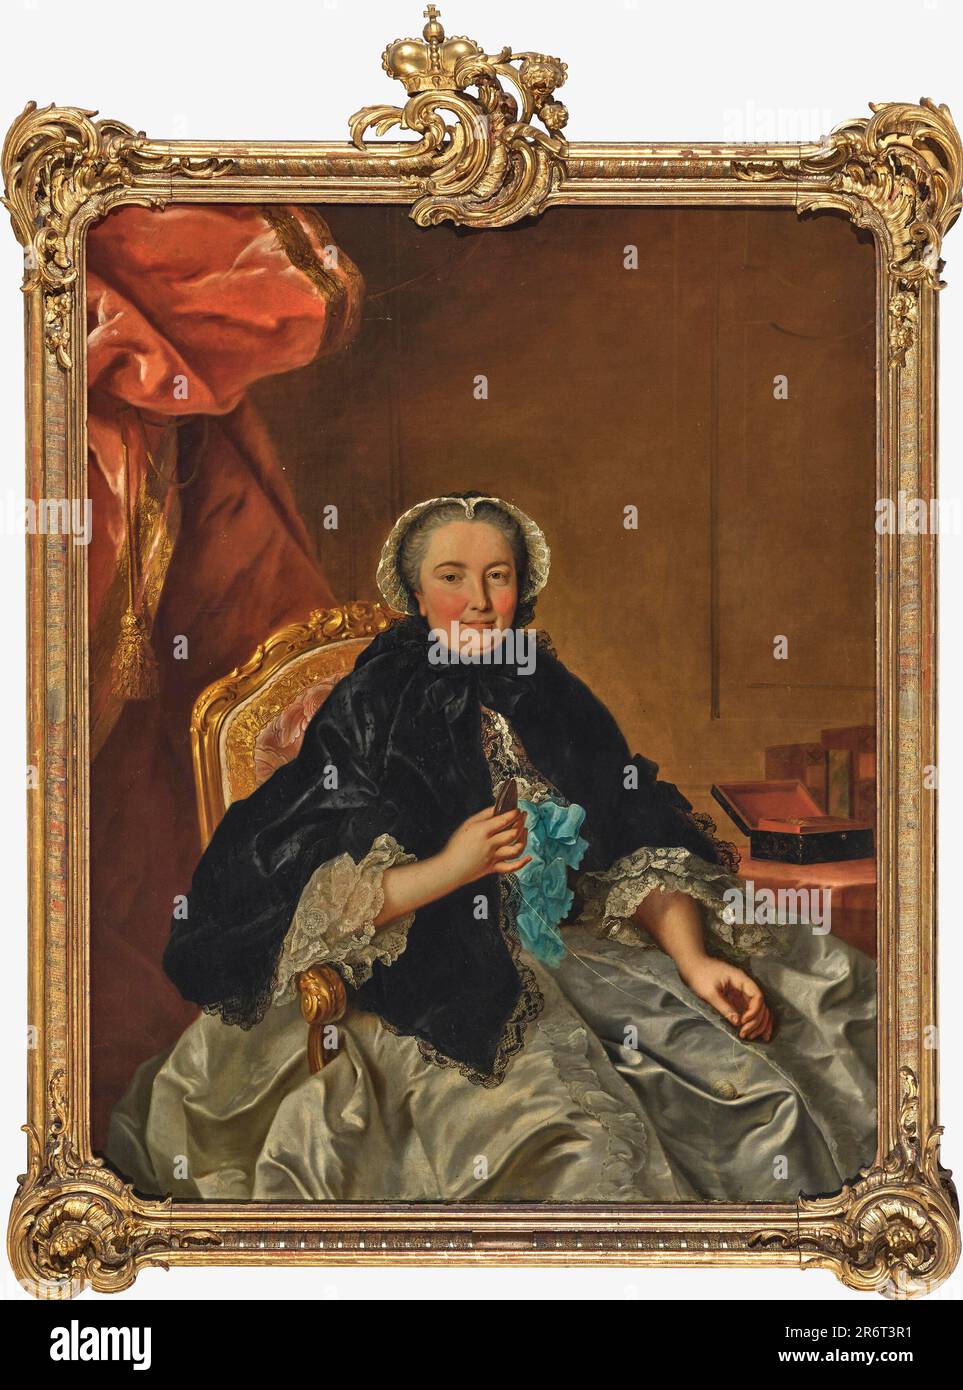 Countess Palatine Caroline of Nassau-Saarbrücken (1704-1774). Museum: PRIVATE COLLECTION. Author: Tischbein, Johann Heinrich, the Elder. Stock Photo